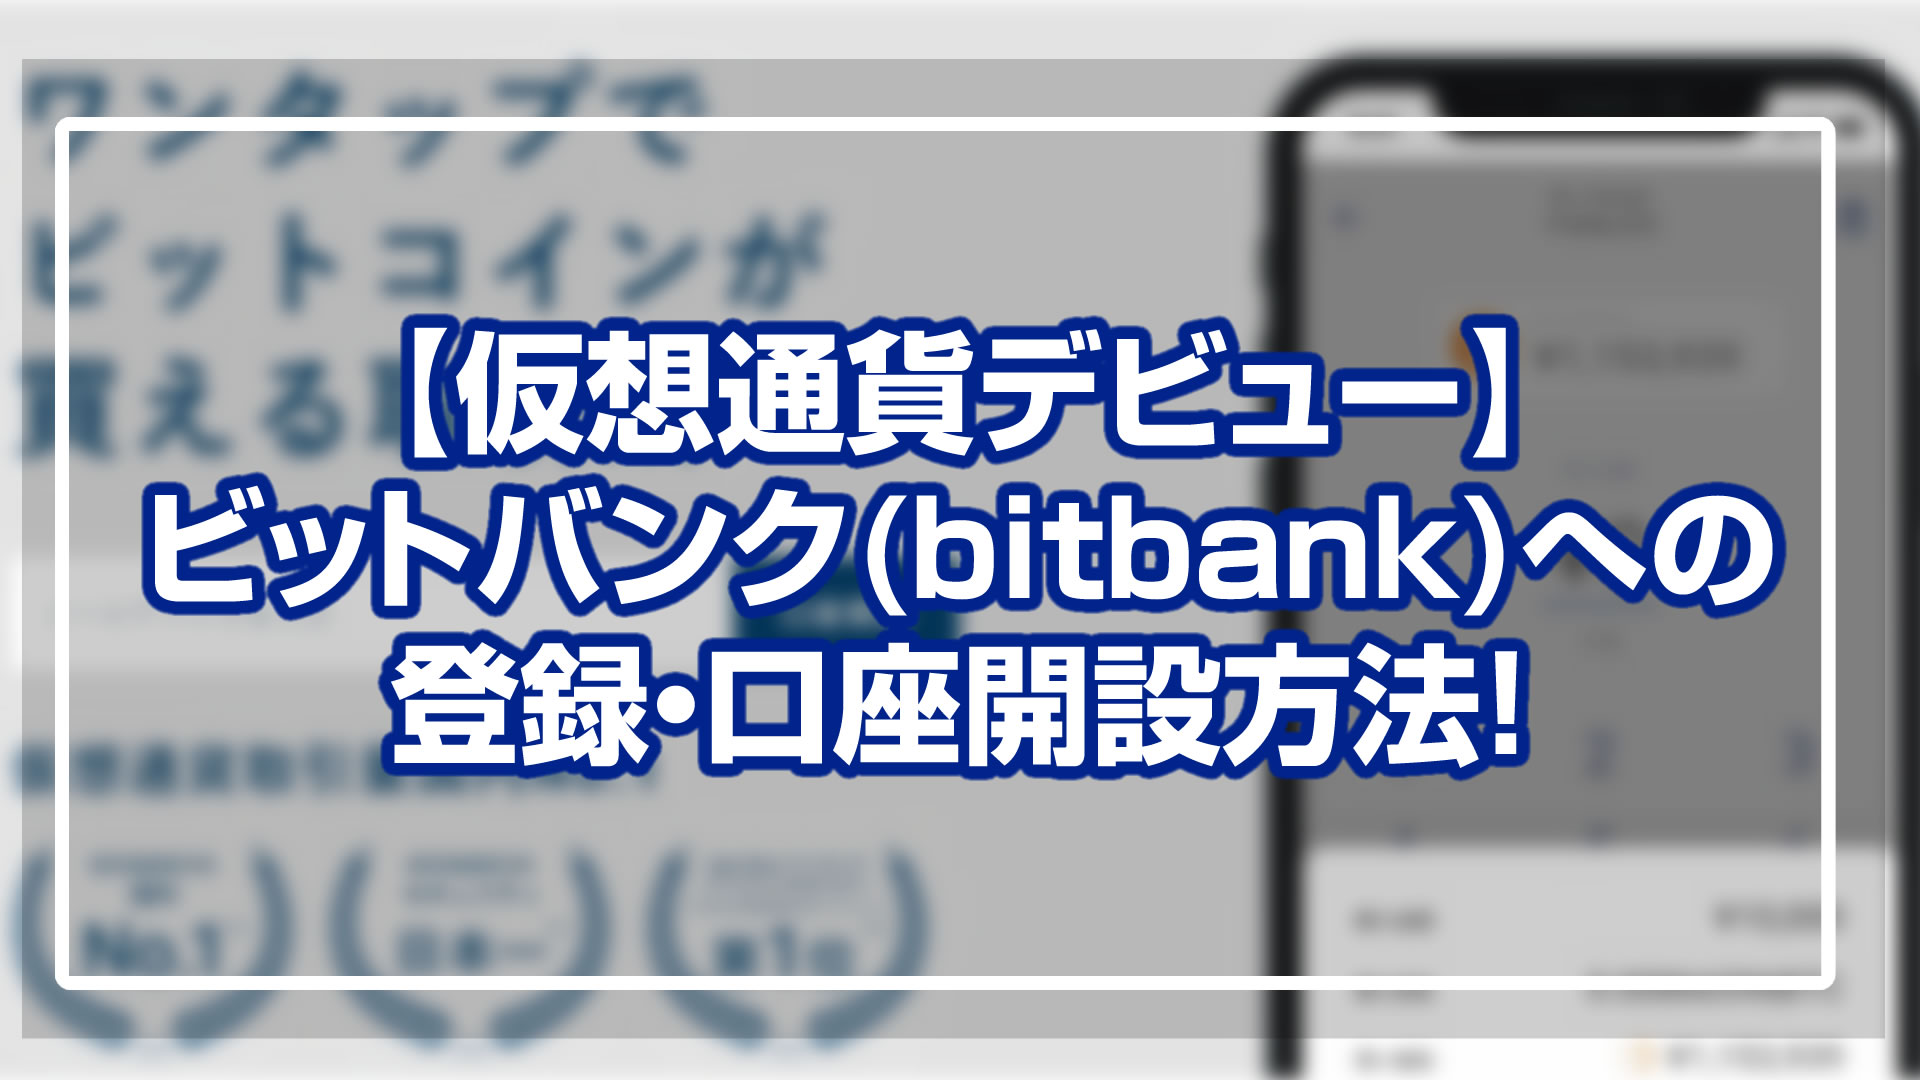 ビットバンク(bitbank)の登録・口座開設方法